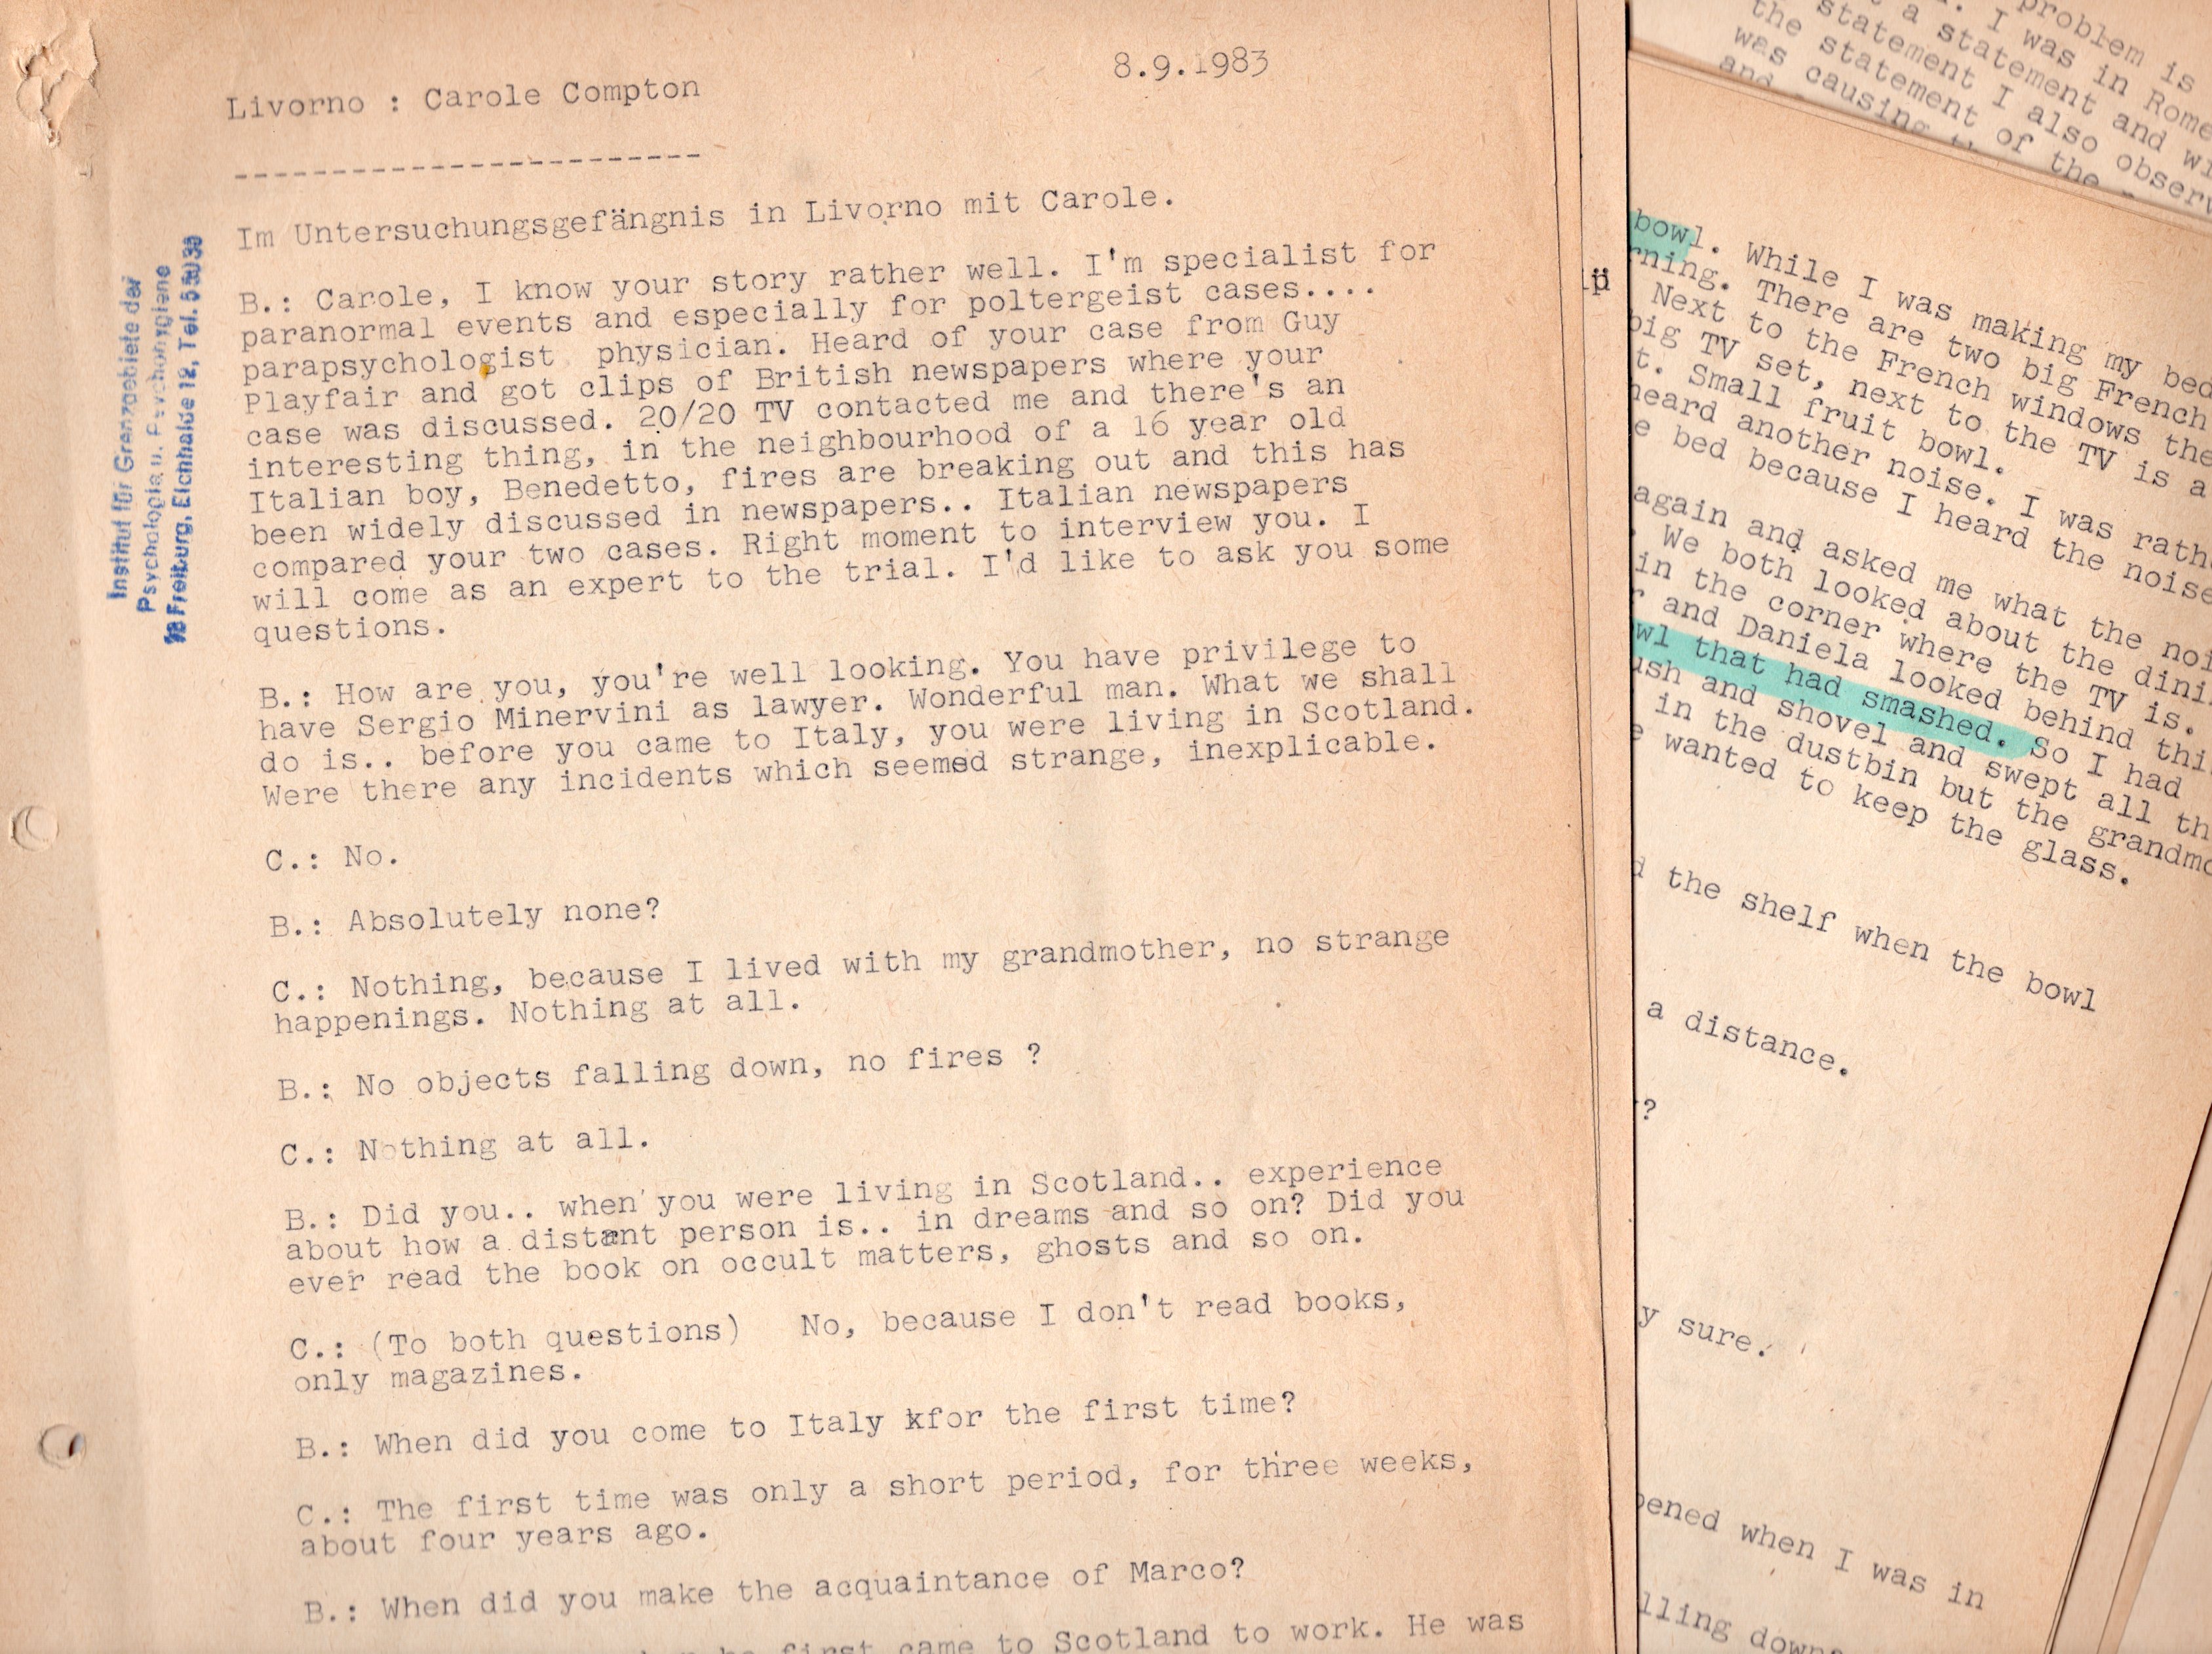 Transkript eines Gesprächs von Hans Bender mit Carole Compton in Livorno (8.9.1983)(Archiv des IGPP)